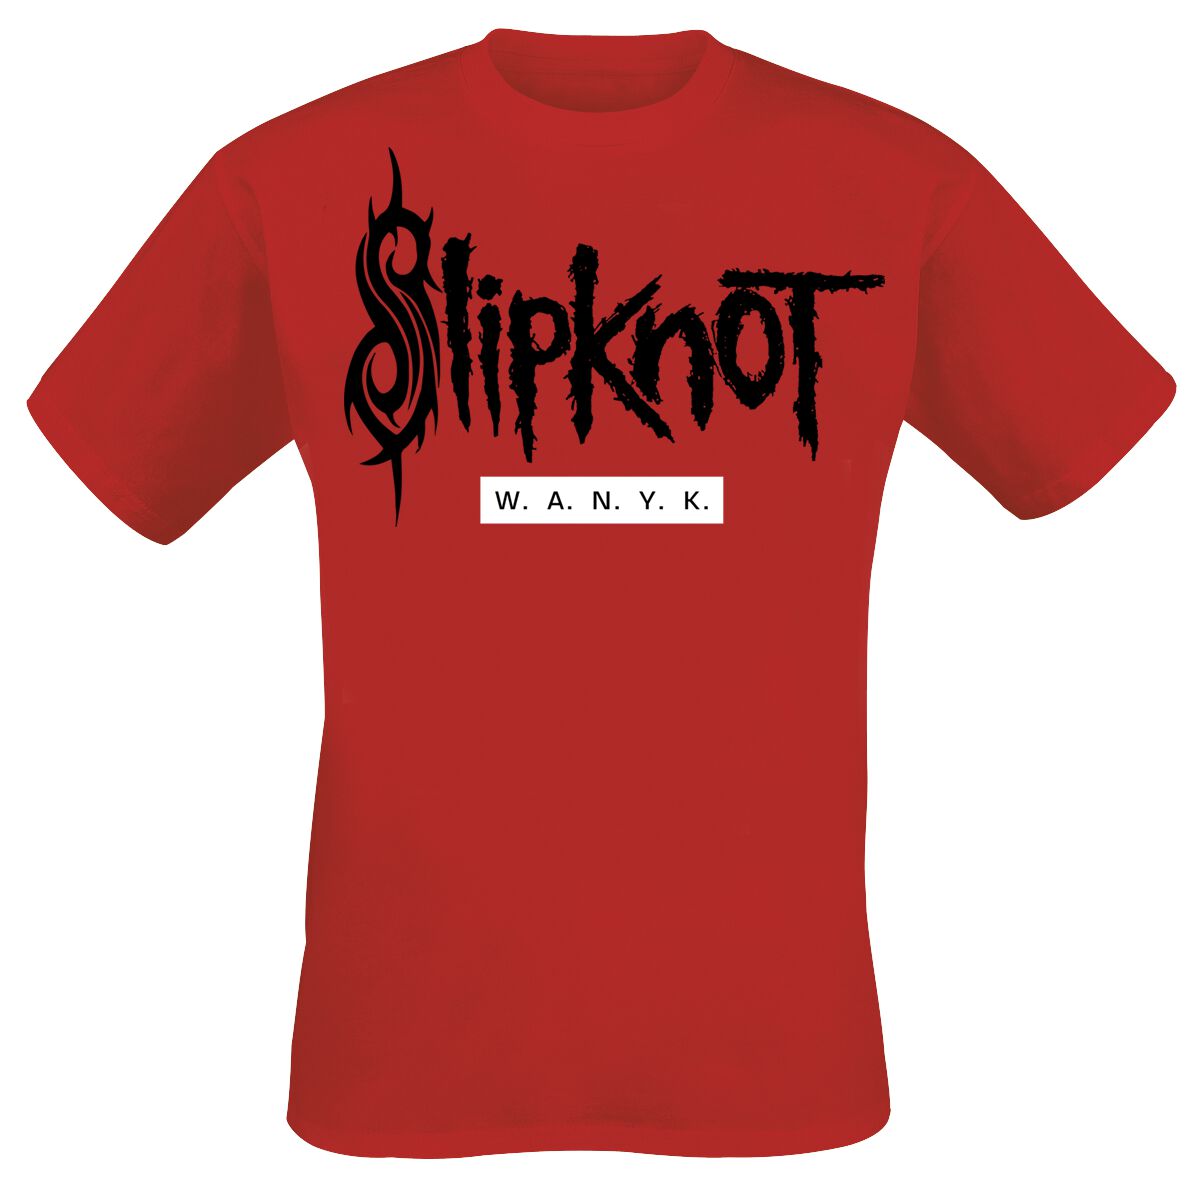 Slipknot T-Shirt - We Are Not Your Kind - M bis 5XL - für Männer - Größe M - rot  - EMP exklusives Merchandise!